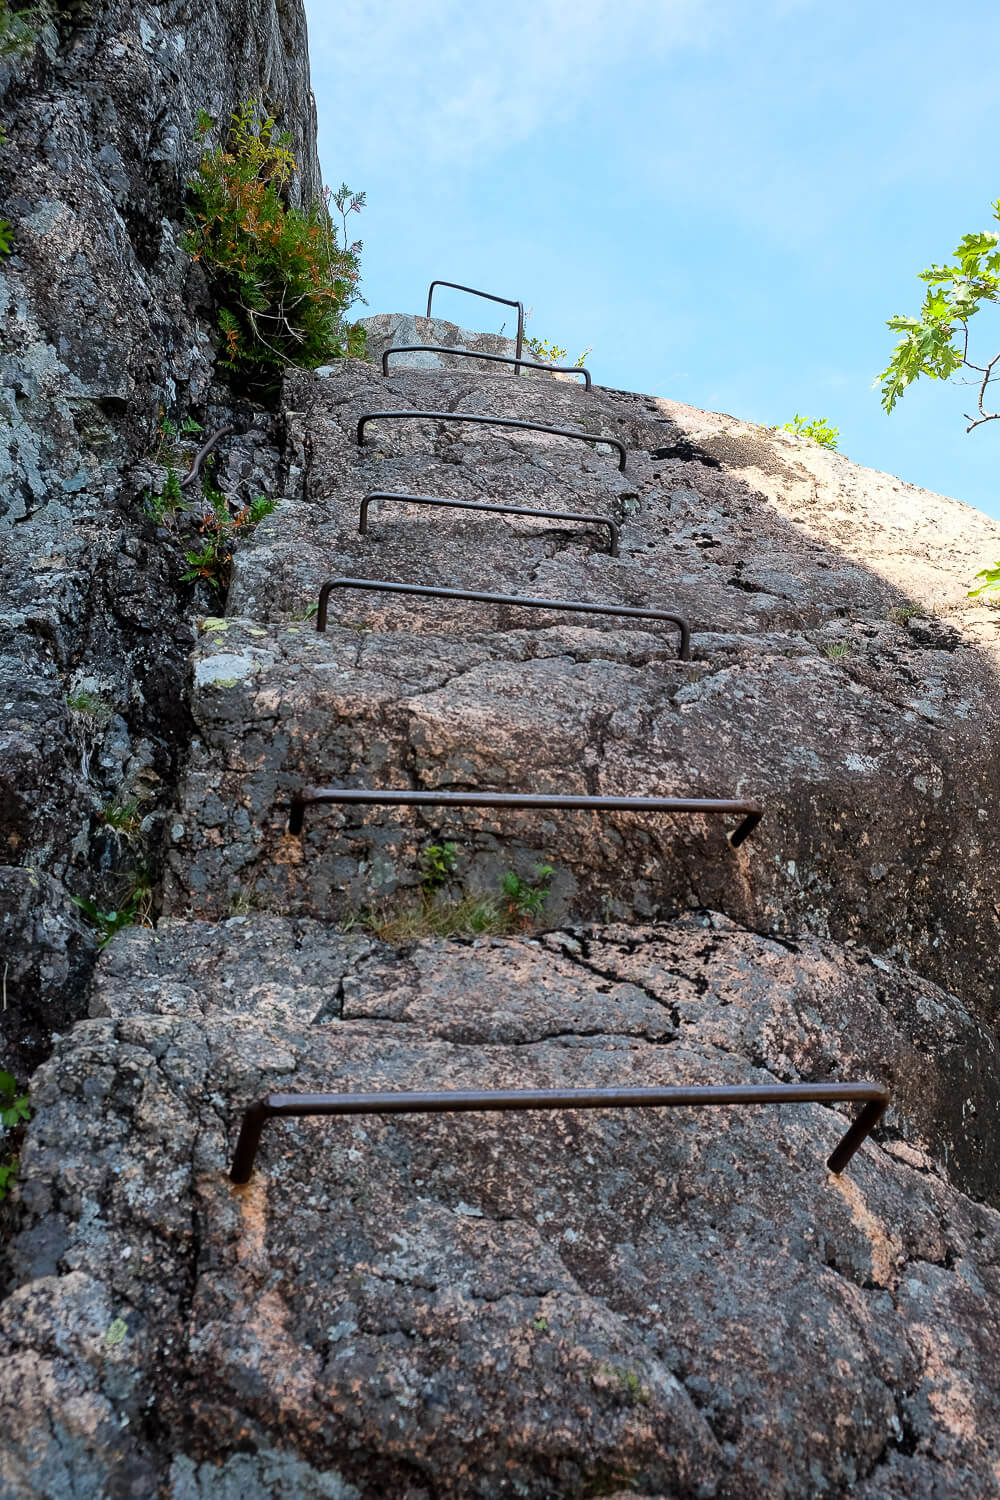 Trail Guide: Jordan Cliffs Trail